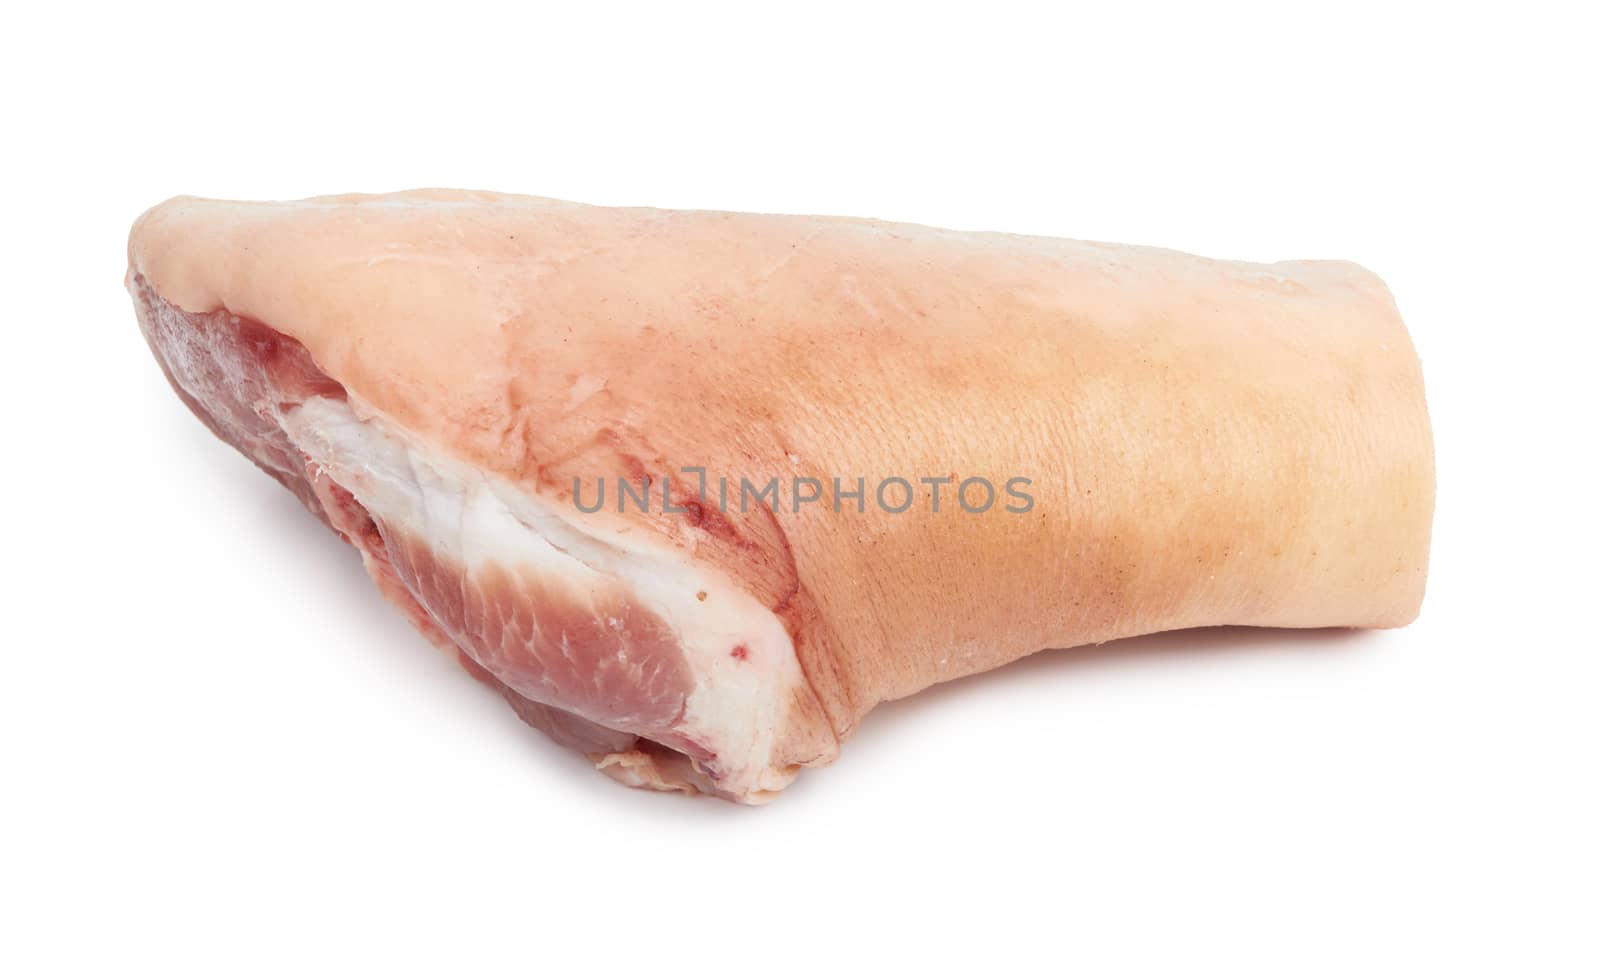 Fresh pork knuckle by pioneer111